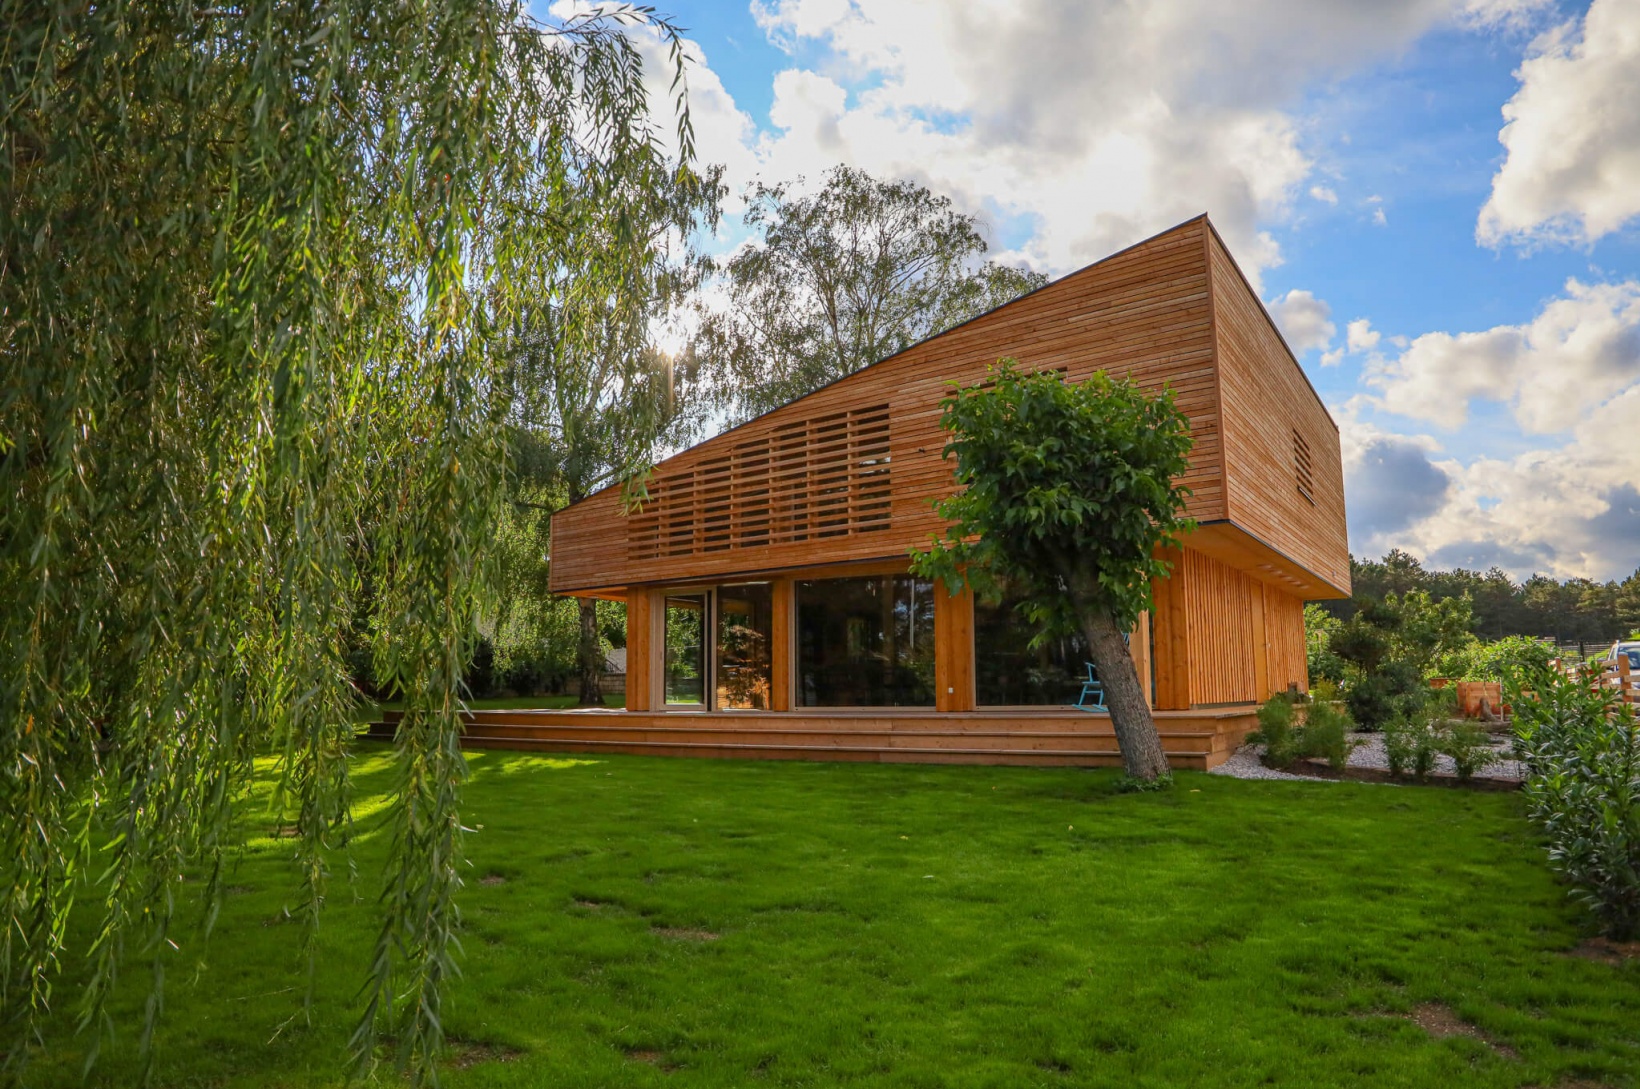 Futuristisches Wohnhaus aus Holz befindet sich von Bäumen umgeben im Grünen|wohnhaus-futuristisch-im-gruenen